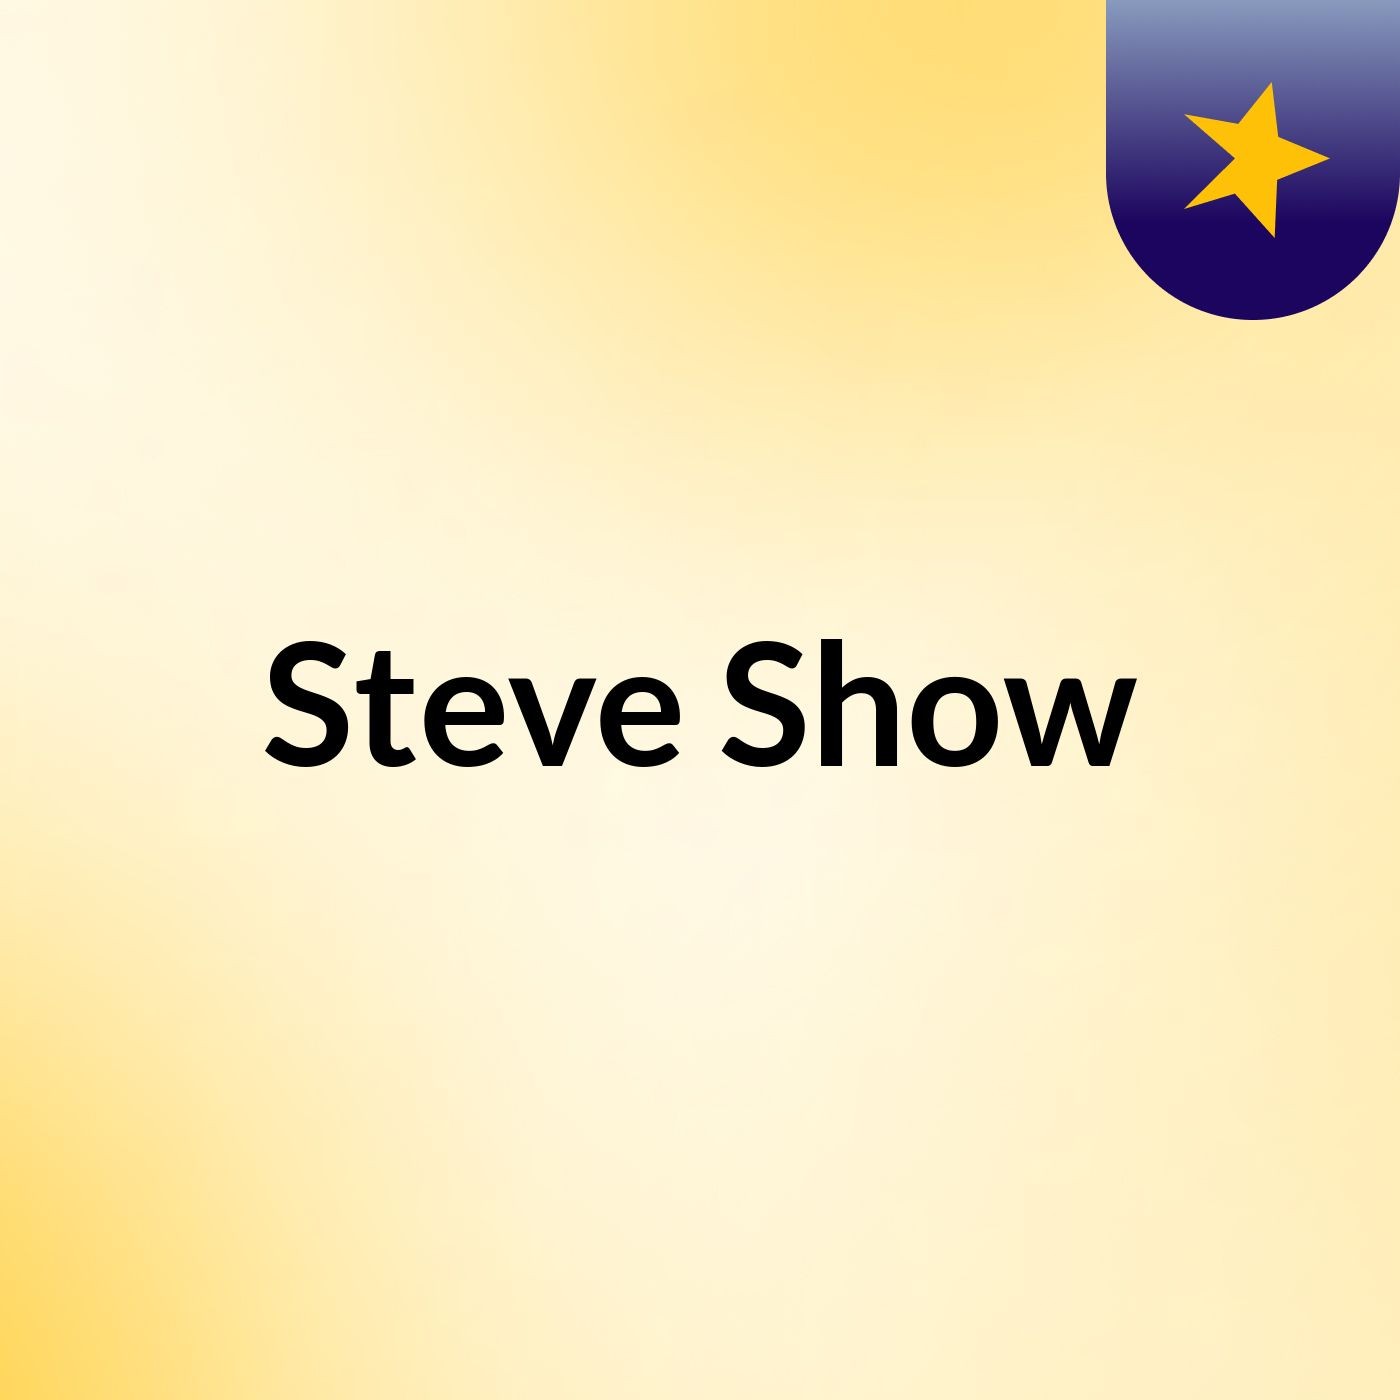 Steve Show